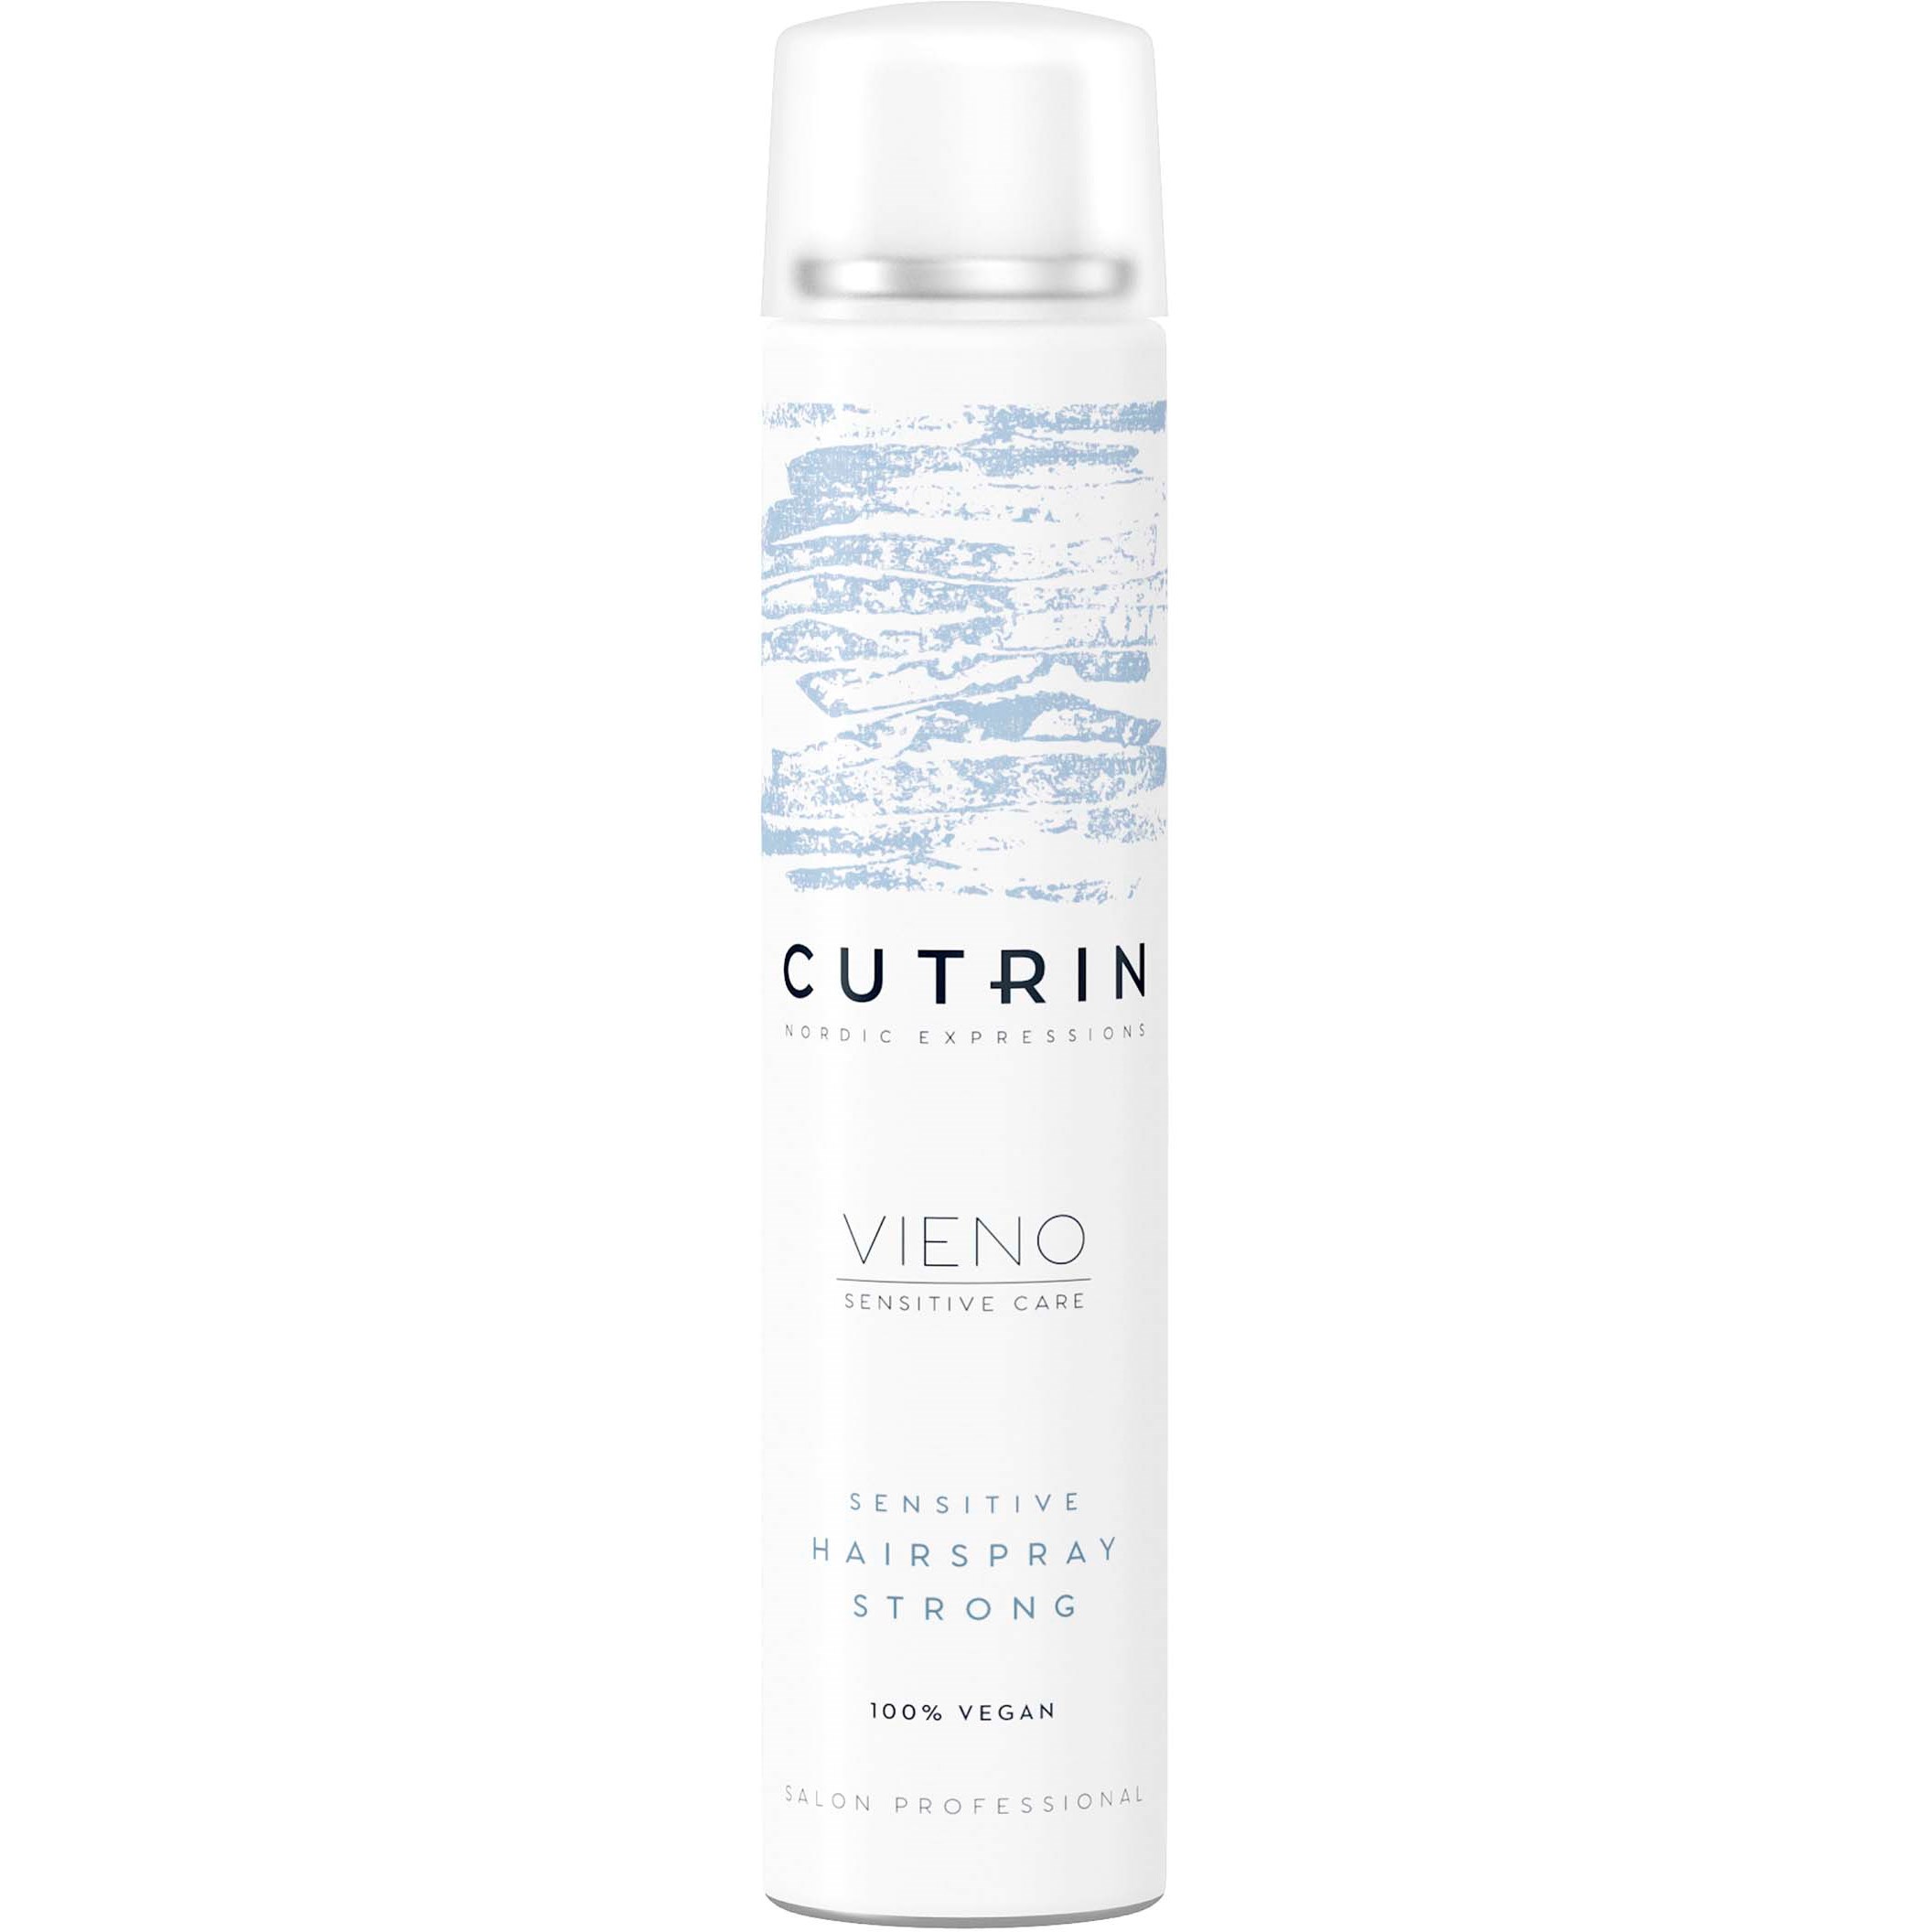 Läs mer om Cutrin VIENO Sensitive Hairspray Strong